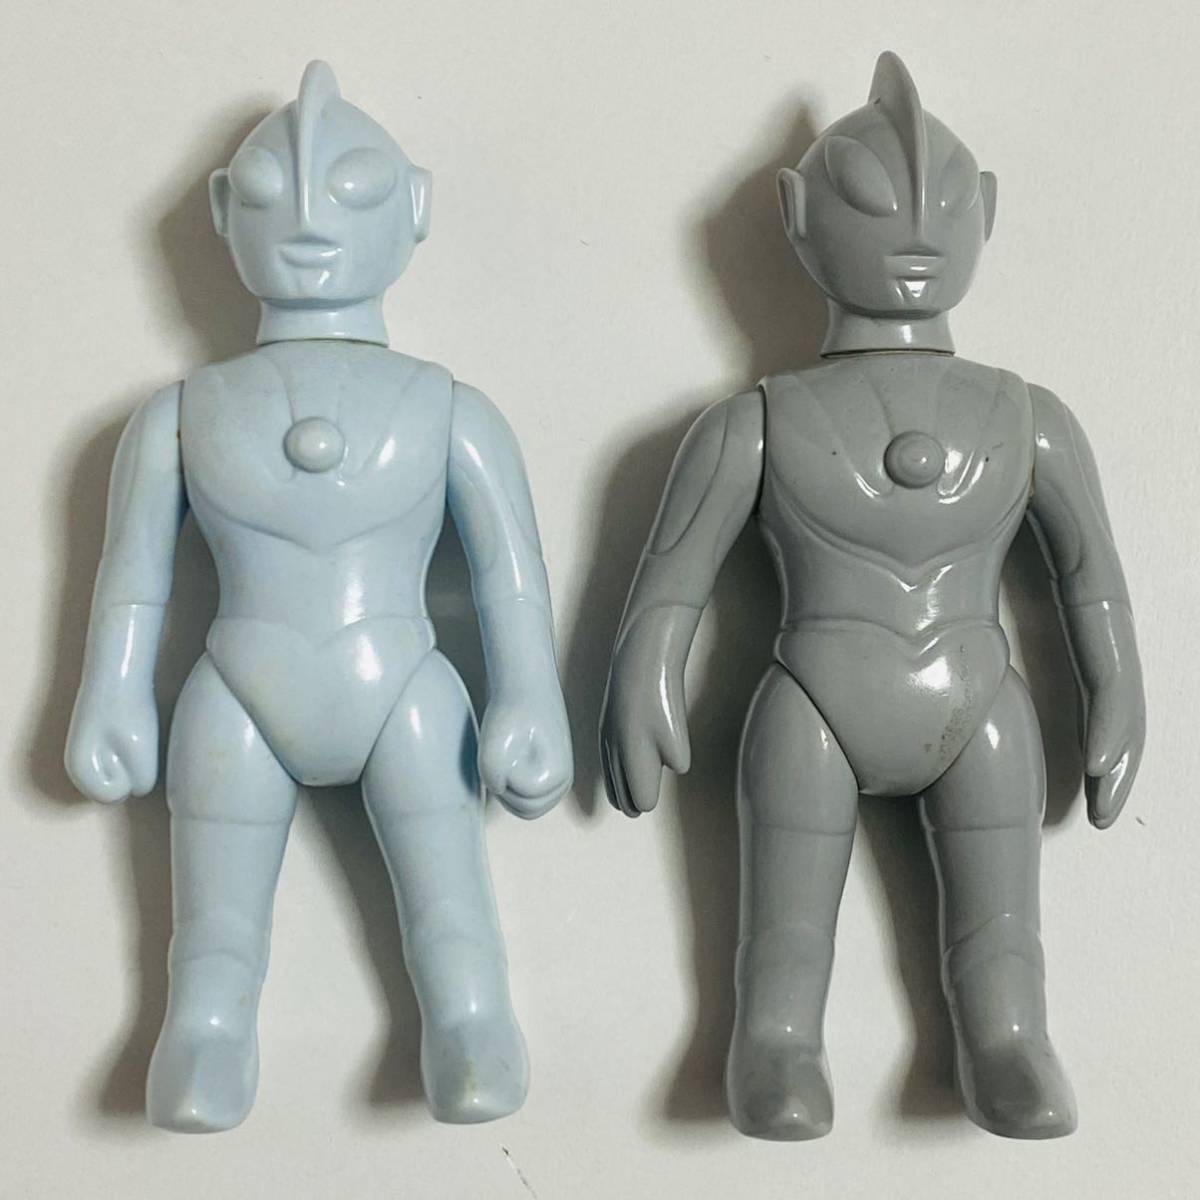 [ б/у товар ]Marmitma-mi летящий nipala baby Ultraman появление Ultraman &nise Ultraman не крашеный sofvi фигурка 